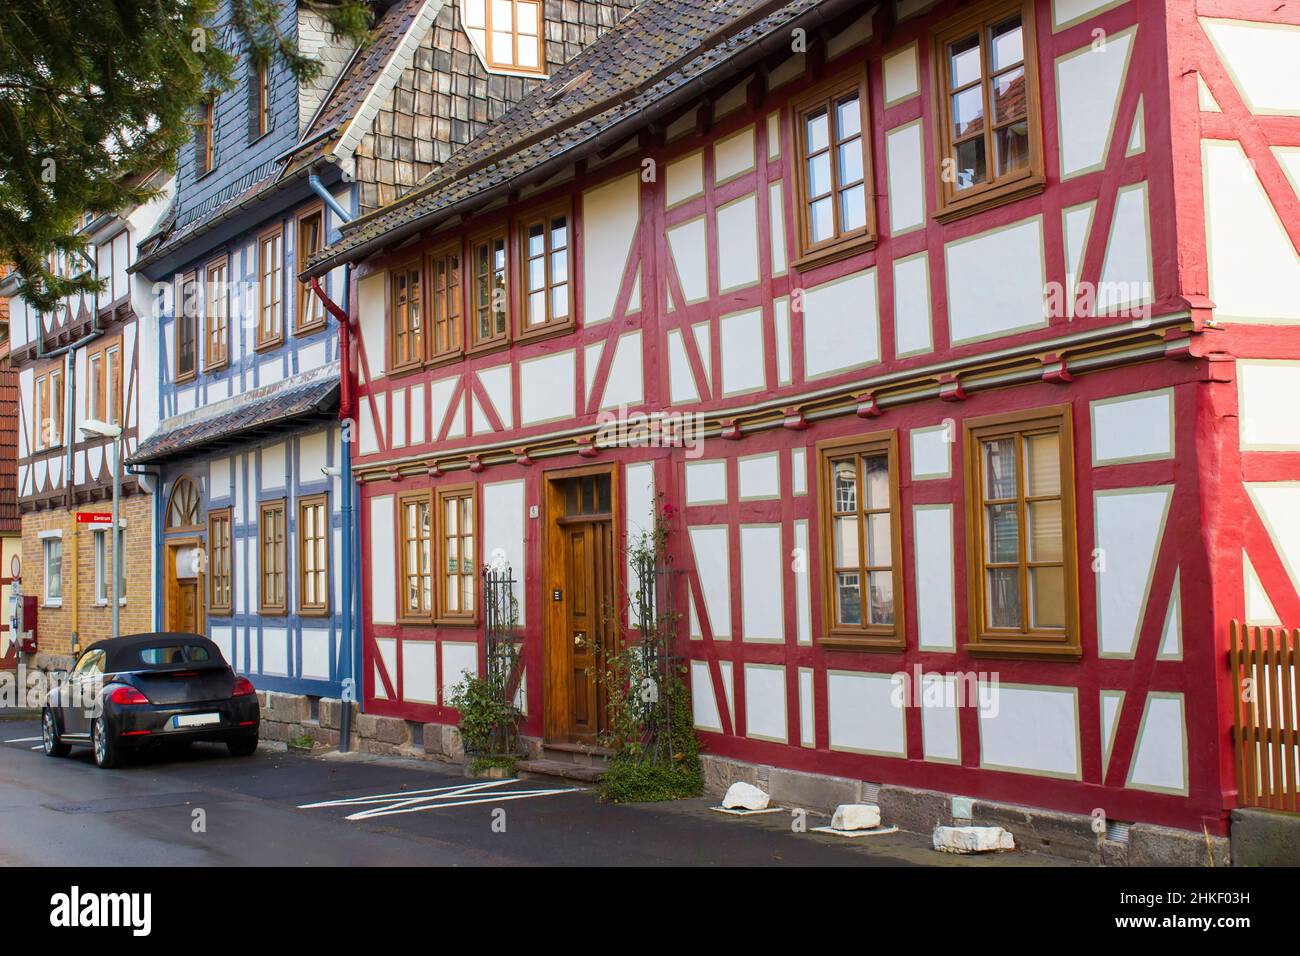 The Town of Witzenhausen in the Werra Valley in Germany, Hessen Stock Photo